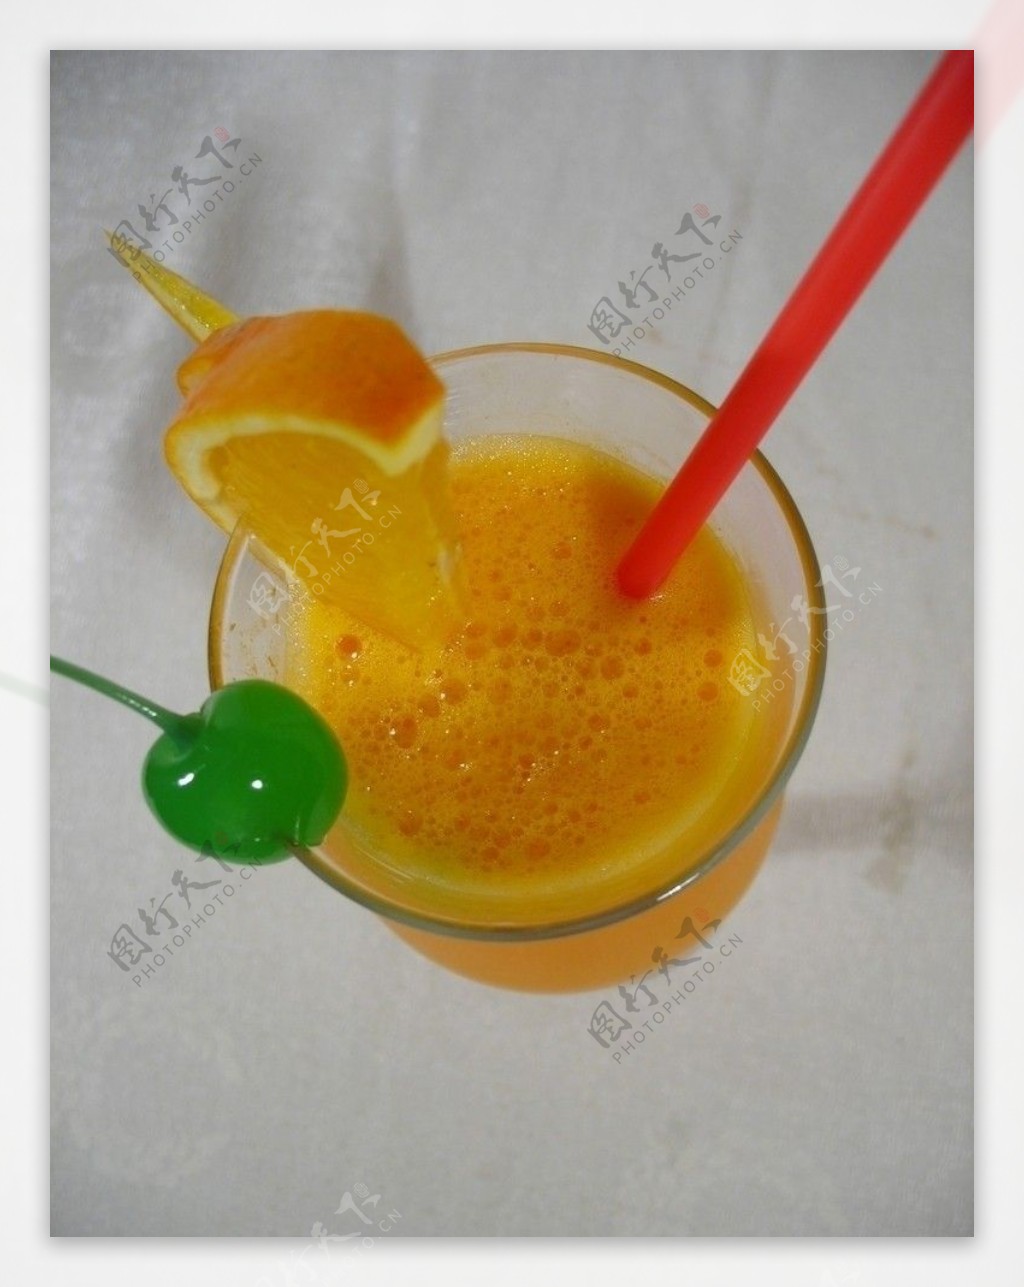 鲜榨橙汁橙汁饮料吸管樱桃水果橙子玻璃杯图片